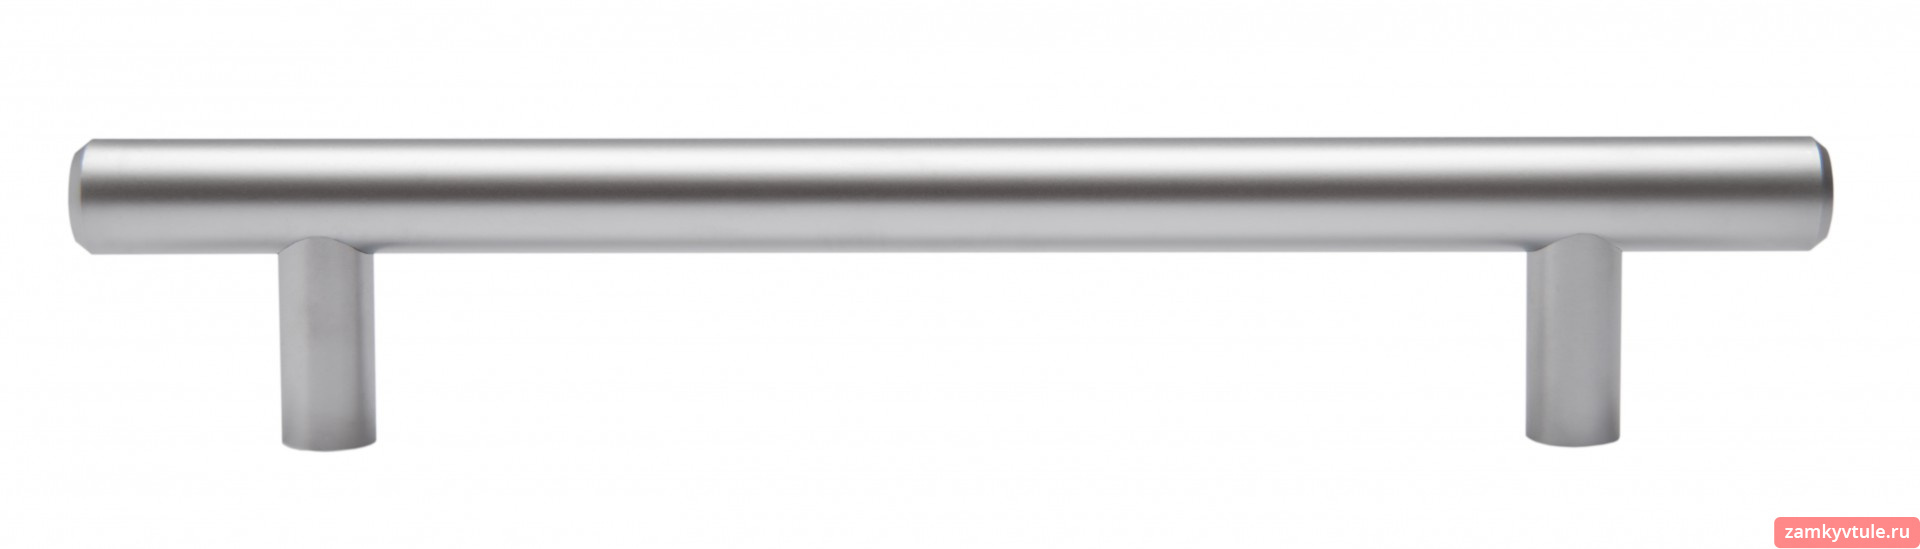 Ручка BOYARD RR002SC.5/288 (сатинированный хром)